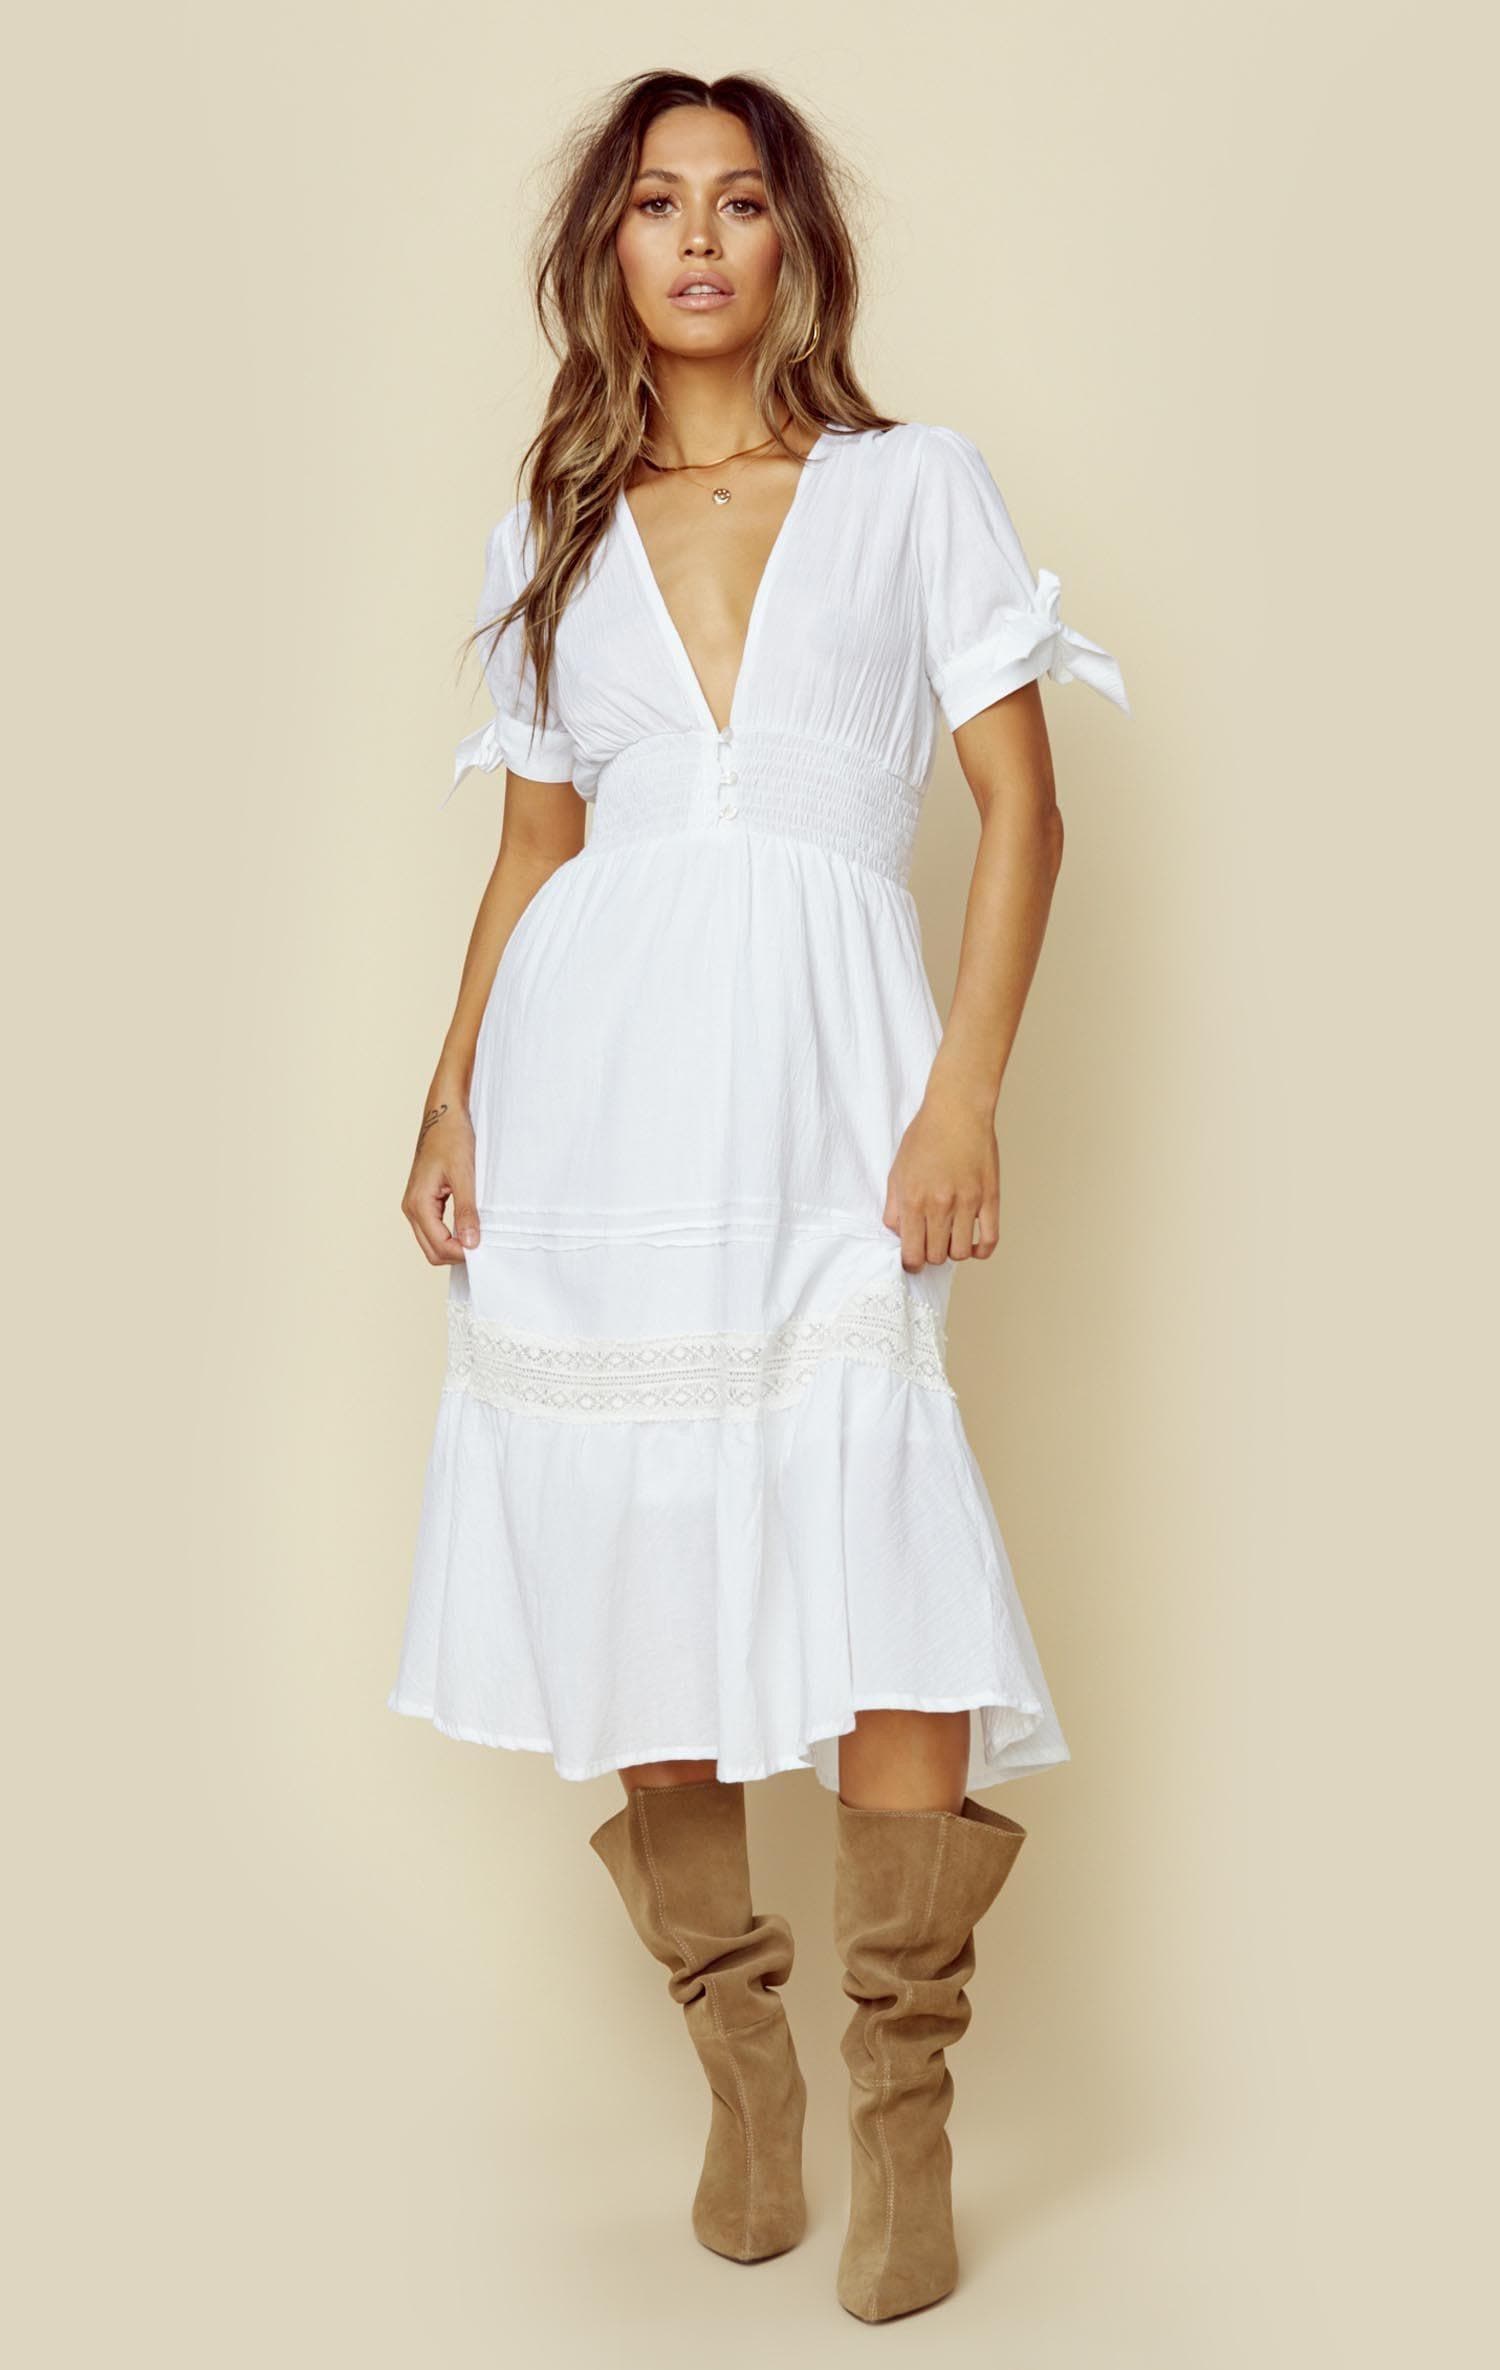 CLEOBELLA CLAIRE DRESS - WHITE